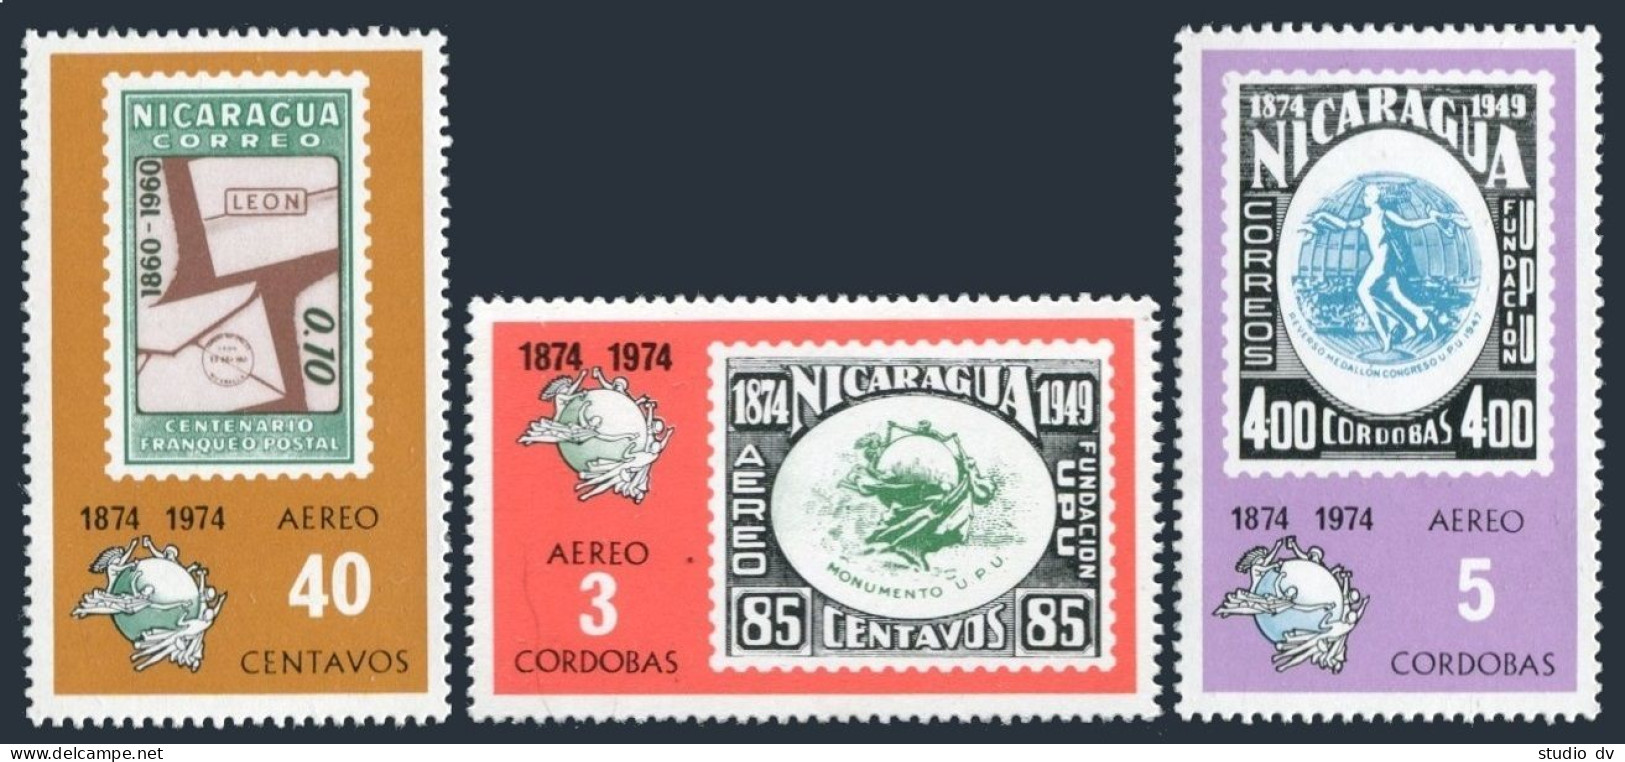 Nicaragua C855A-C855C, MNH. Mi 1793-1795. Air Post 1974.UPU-100. Stamp On Stamp. - Nicaragua